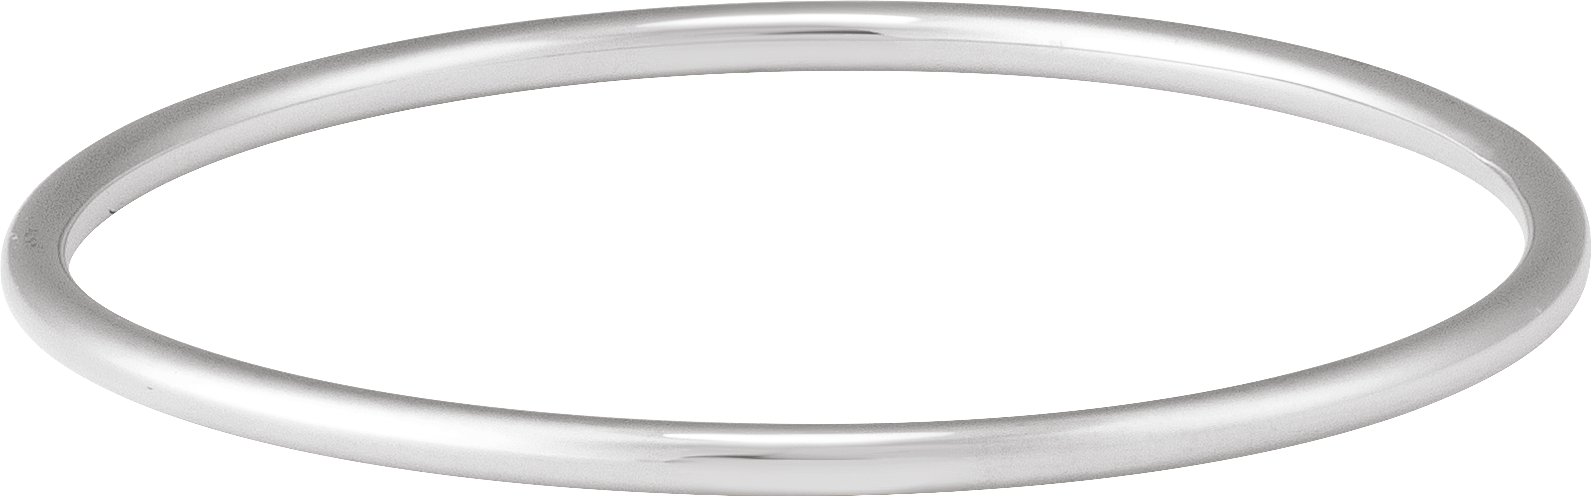 Sterling Silver 3 mm Bangle 7 1/2" Bracelet